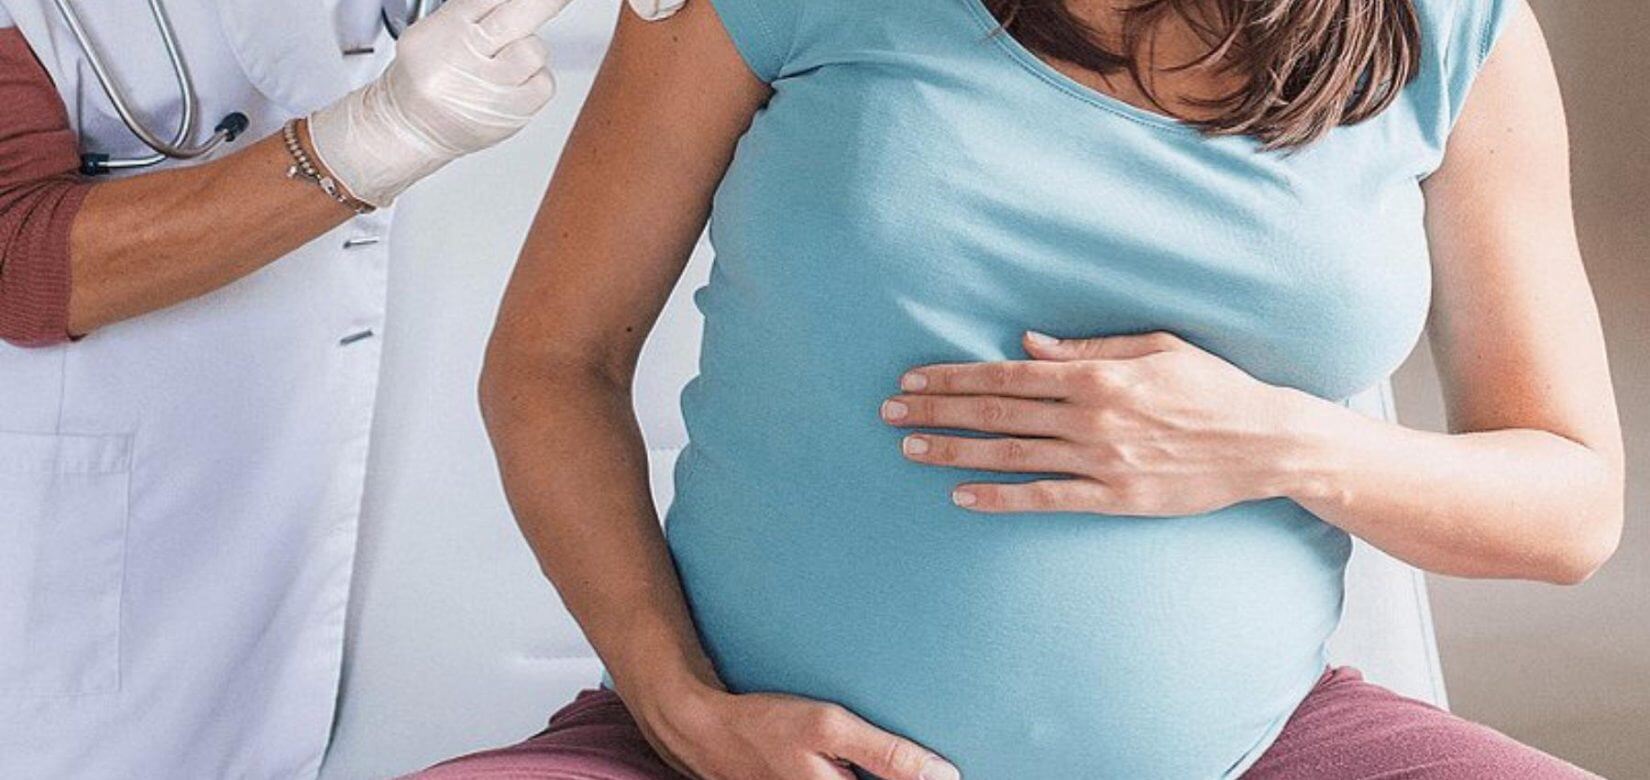 Τα εμβόλια κατά του κορoνοϊού προστατεύουν τις εγκύους - Δεν κάνουν ζημιά στον πλακούντα